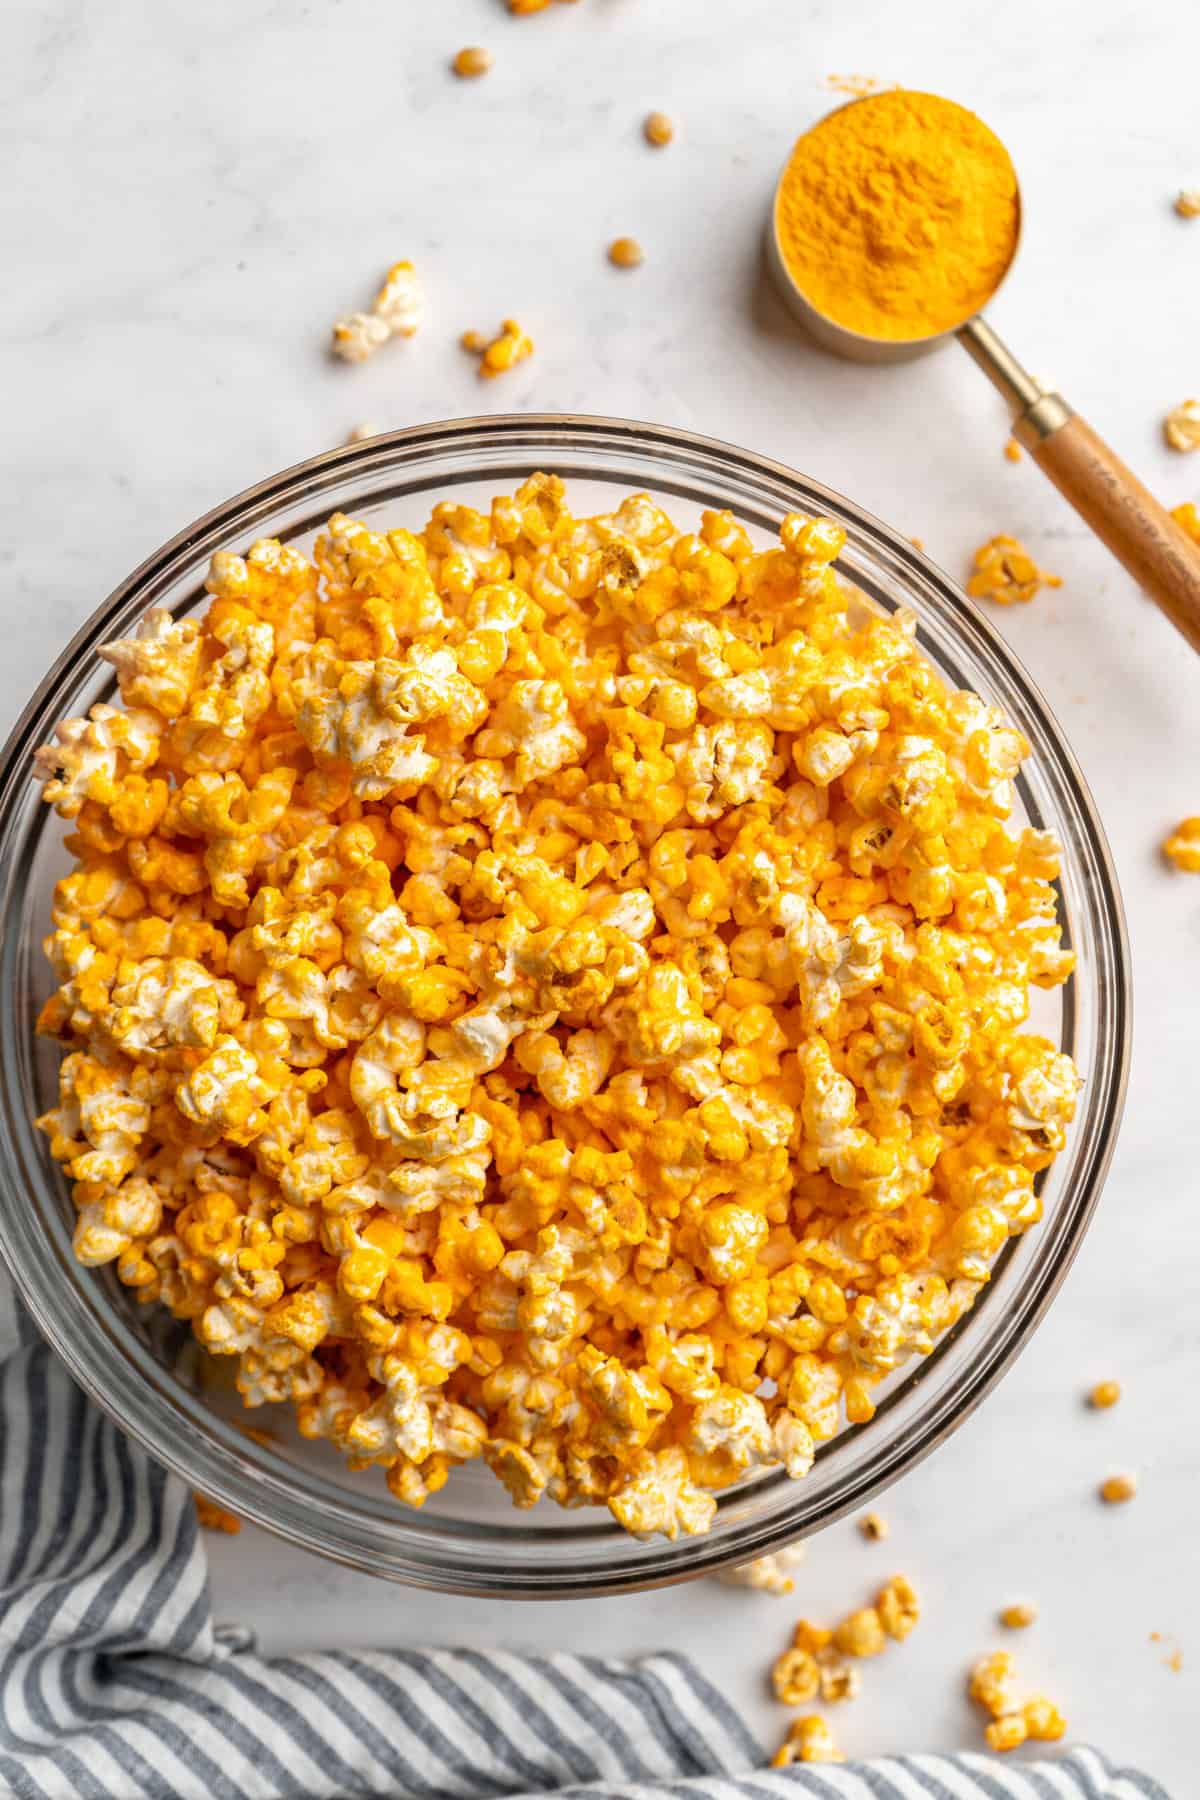 Cheddar popcorn in a bowl.